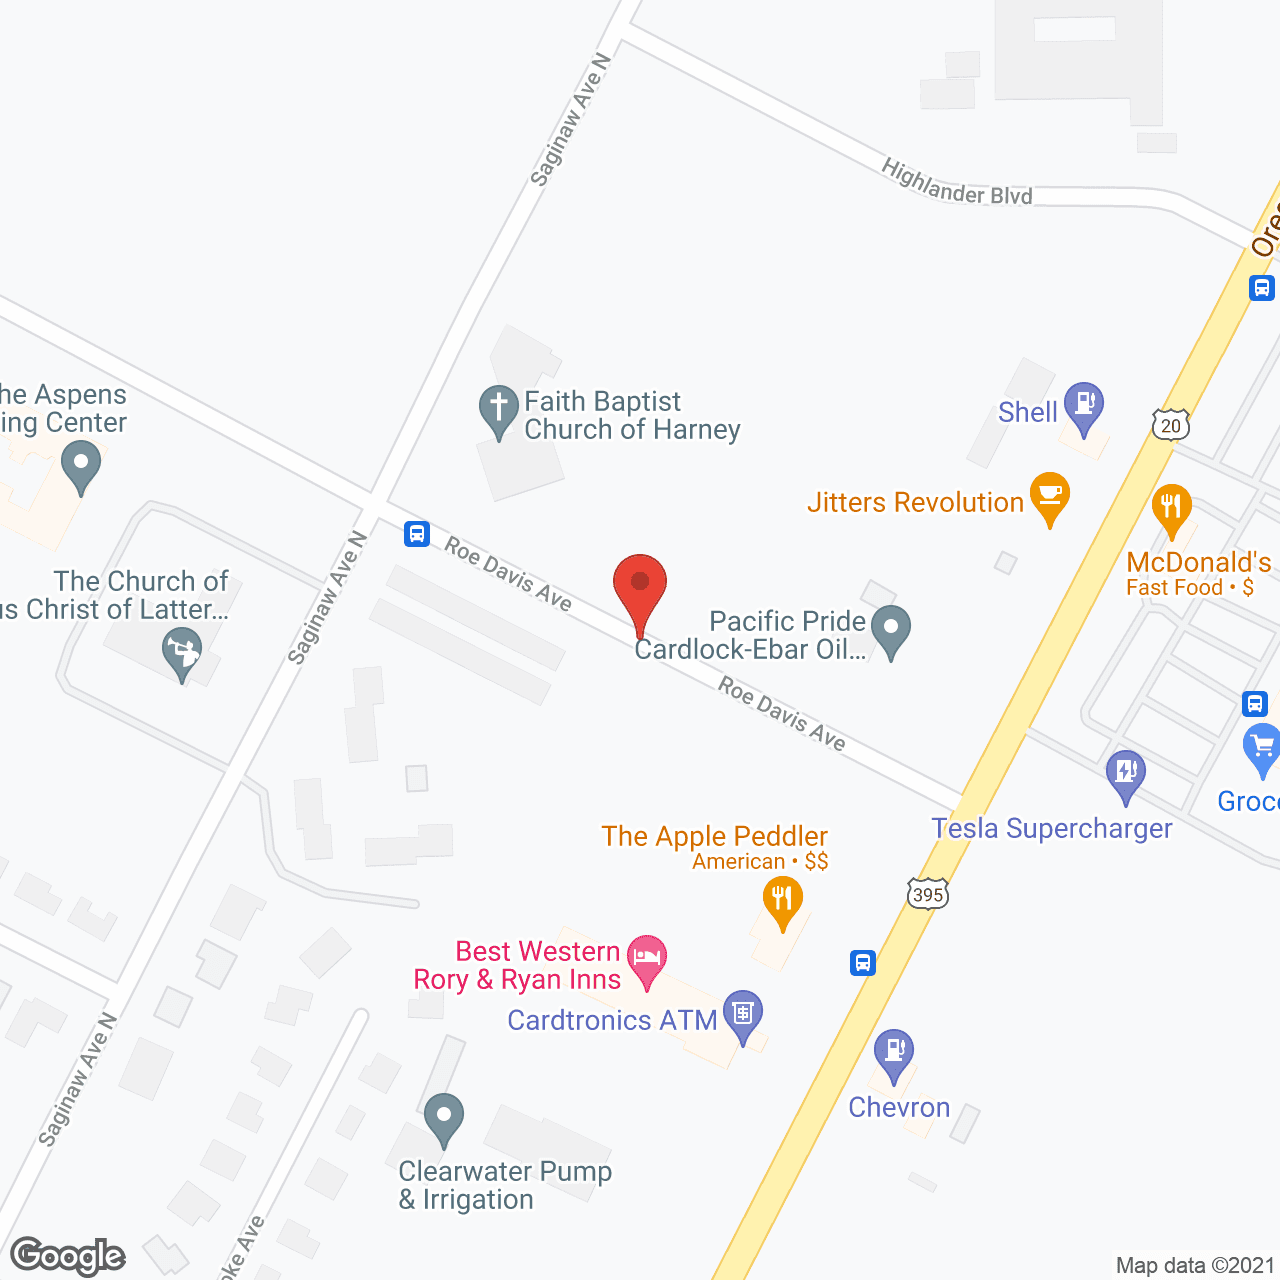 The Aspens Living Center in google map